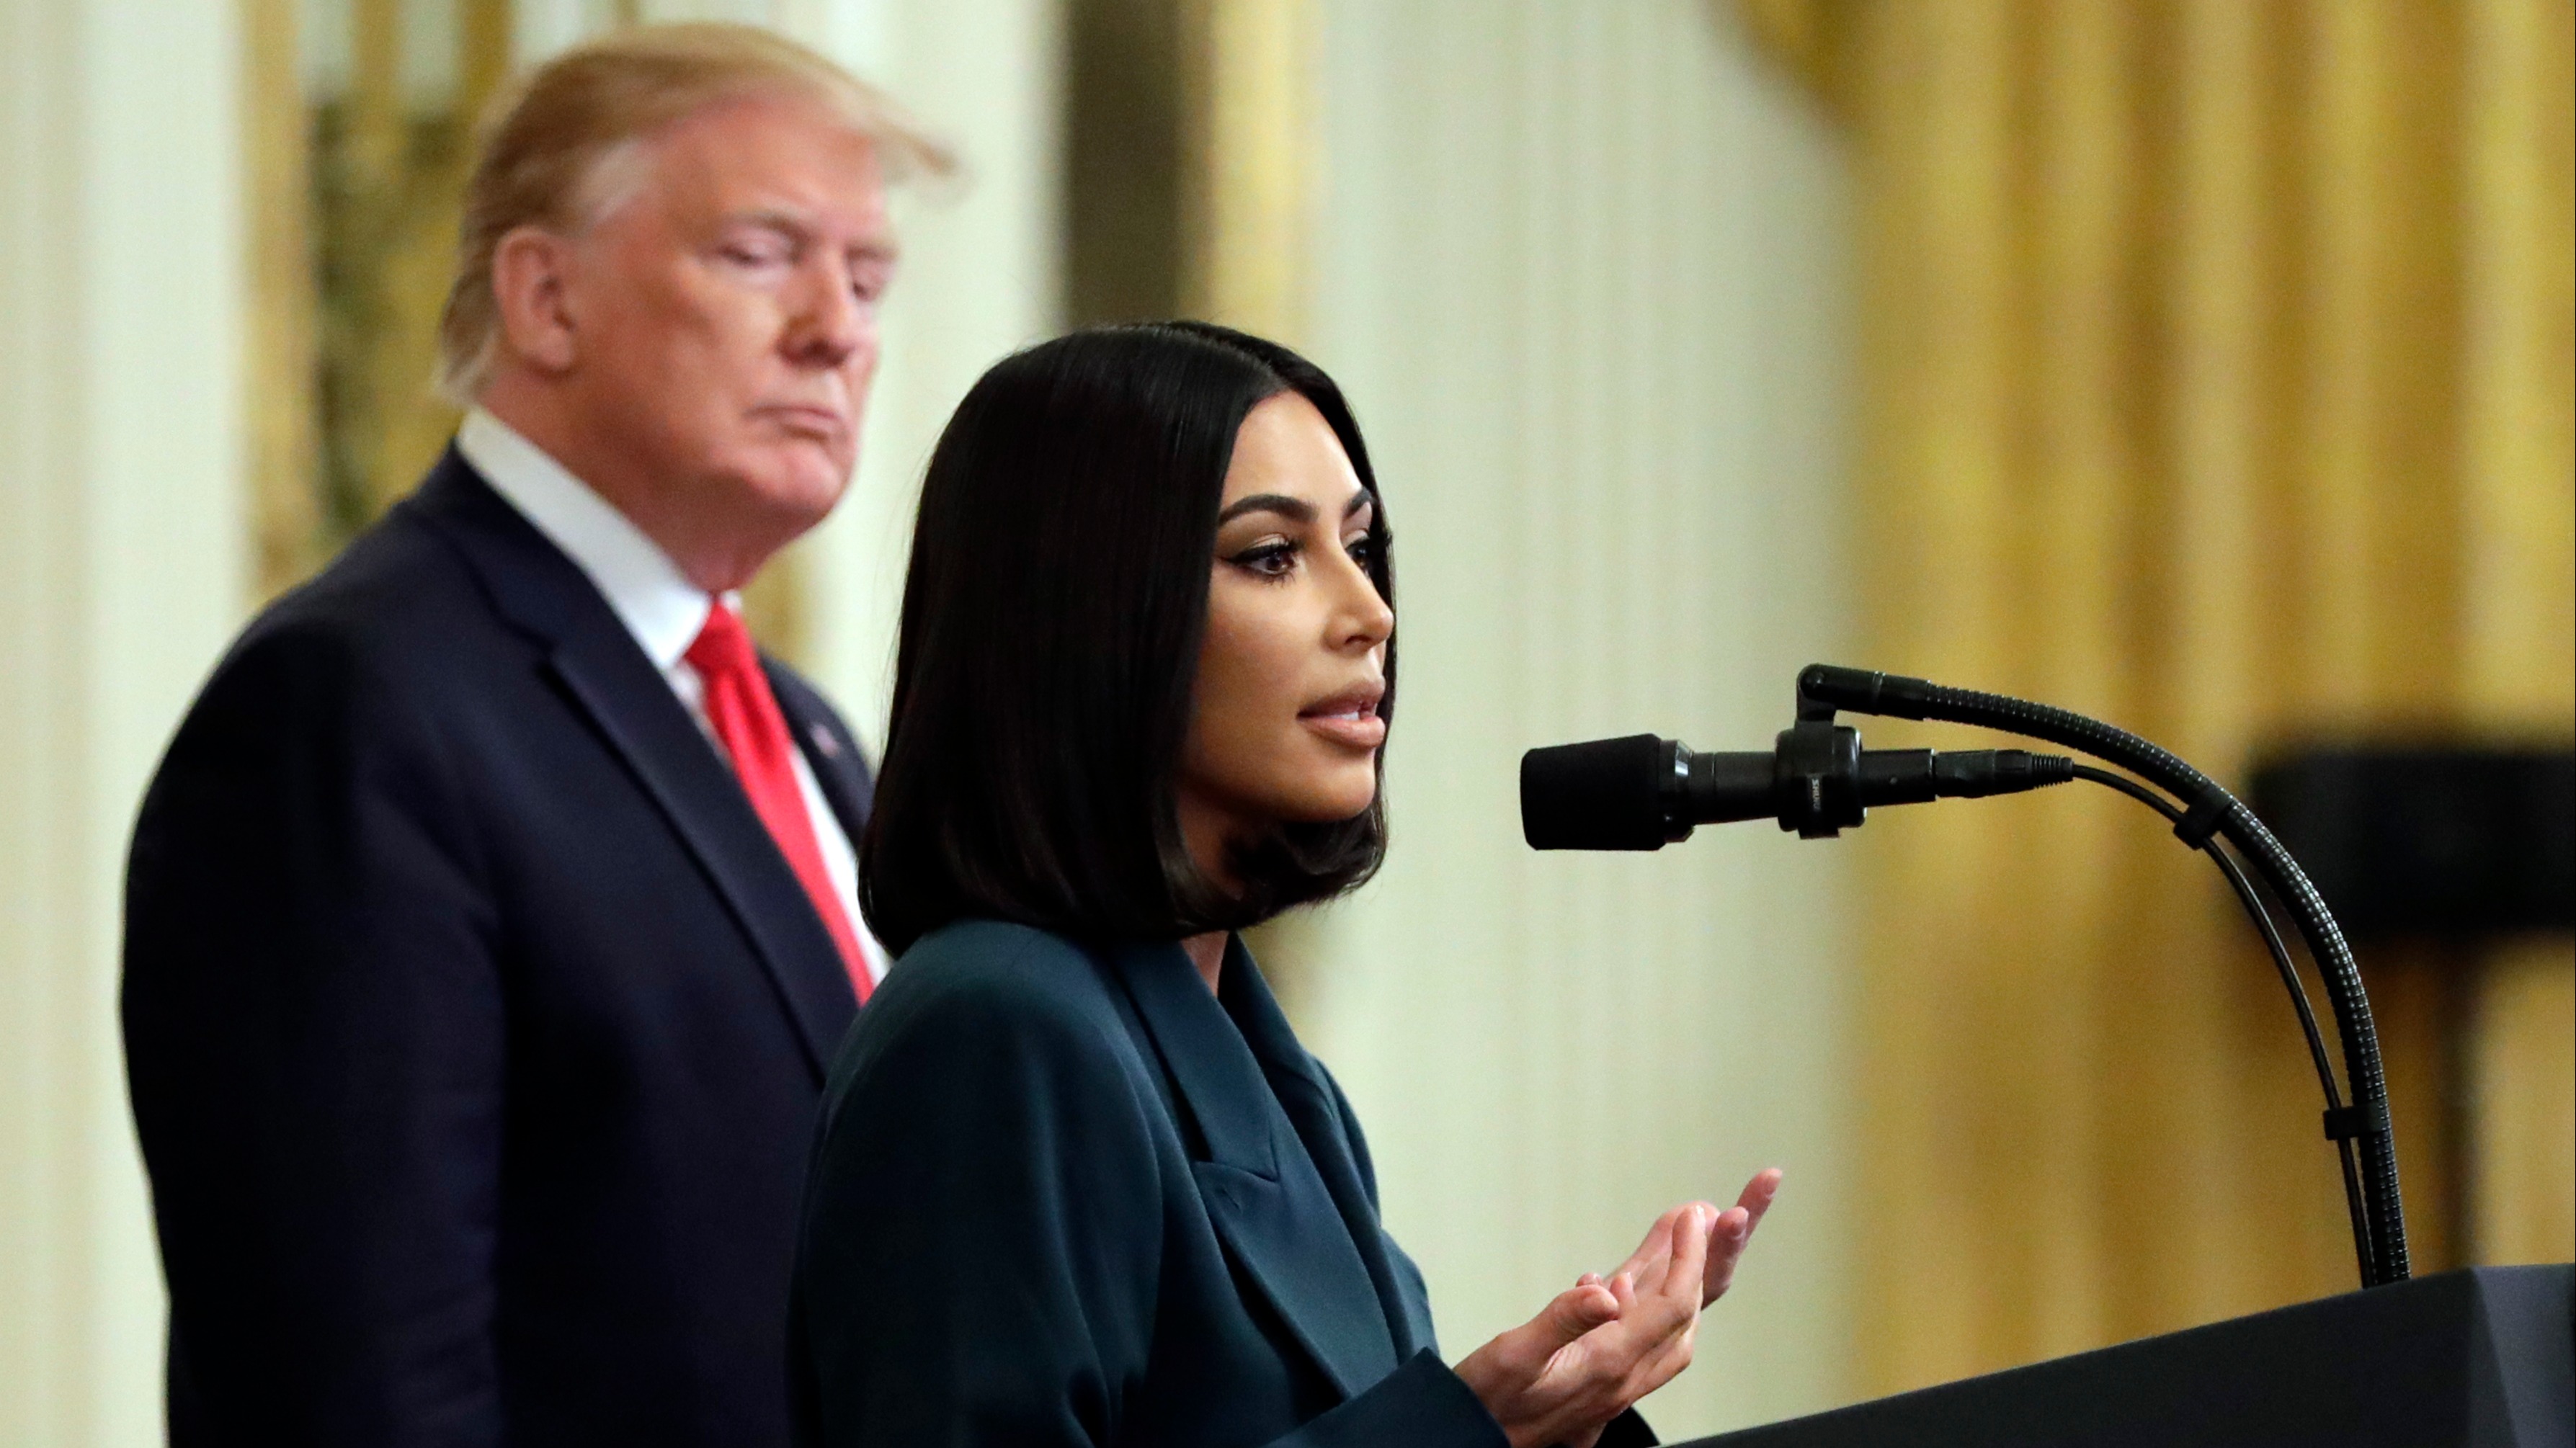 Kim Kardashian West pleads with Donald Trump to pardon death row inmate ...